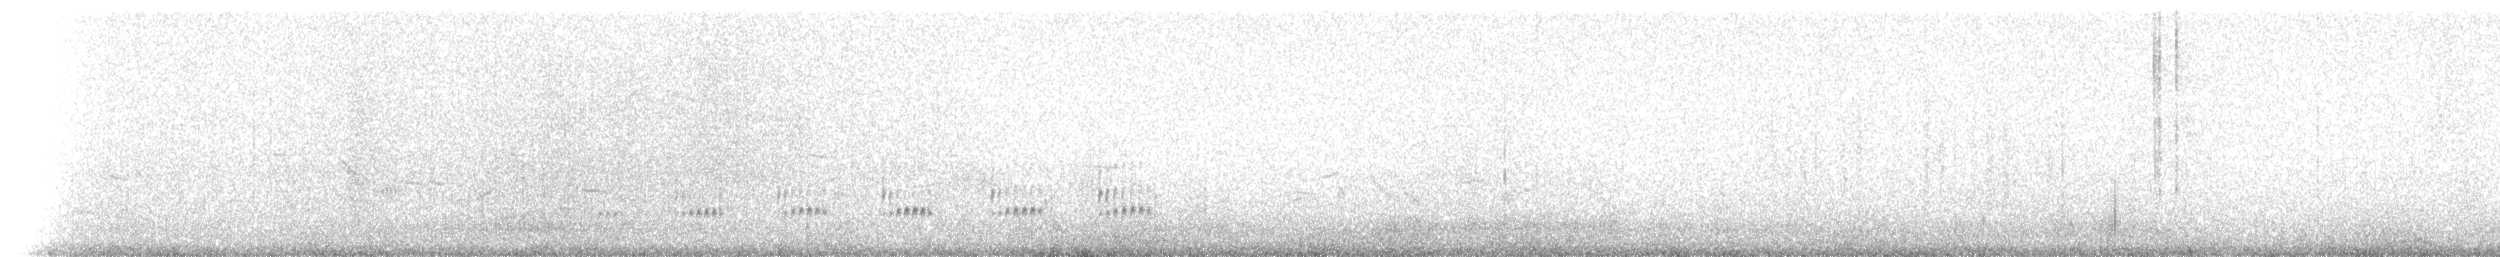 jespák pobřežní (ssp. ptilocnemis) - ML237720